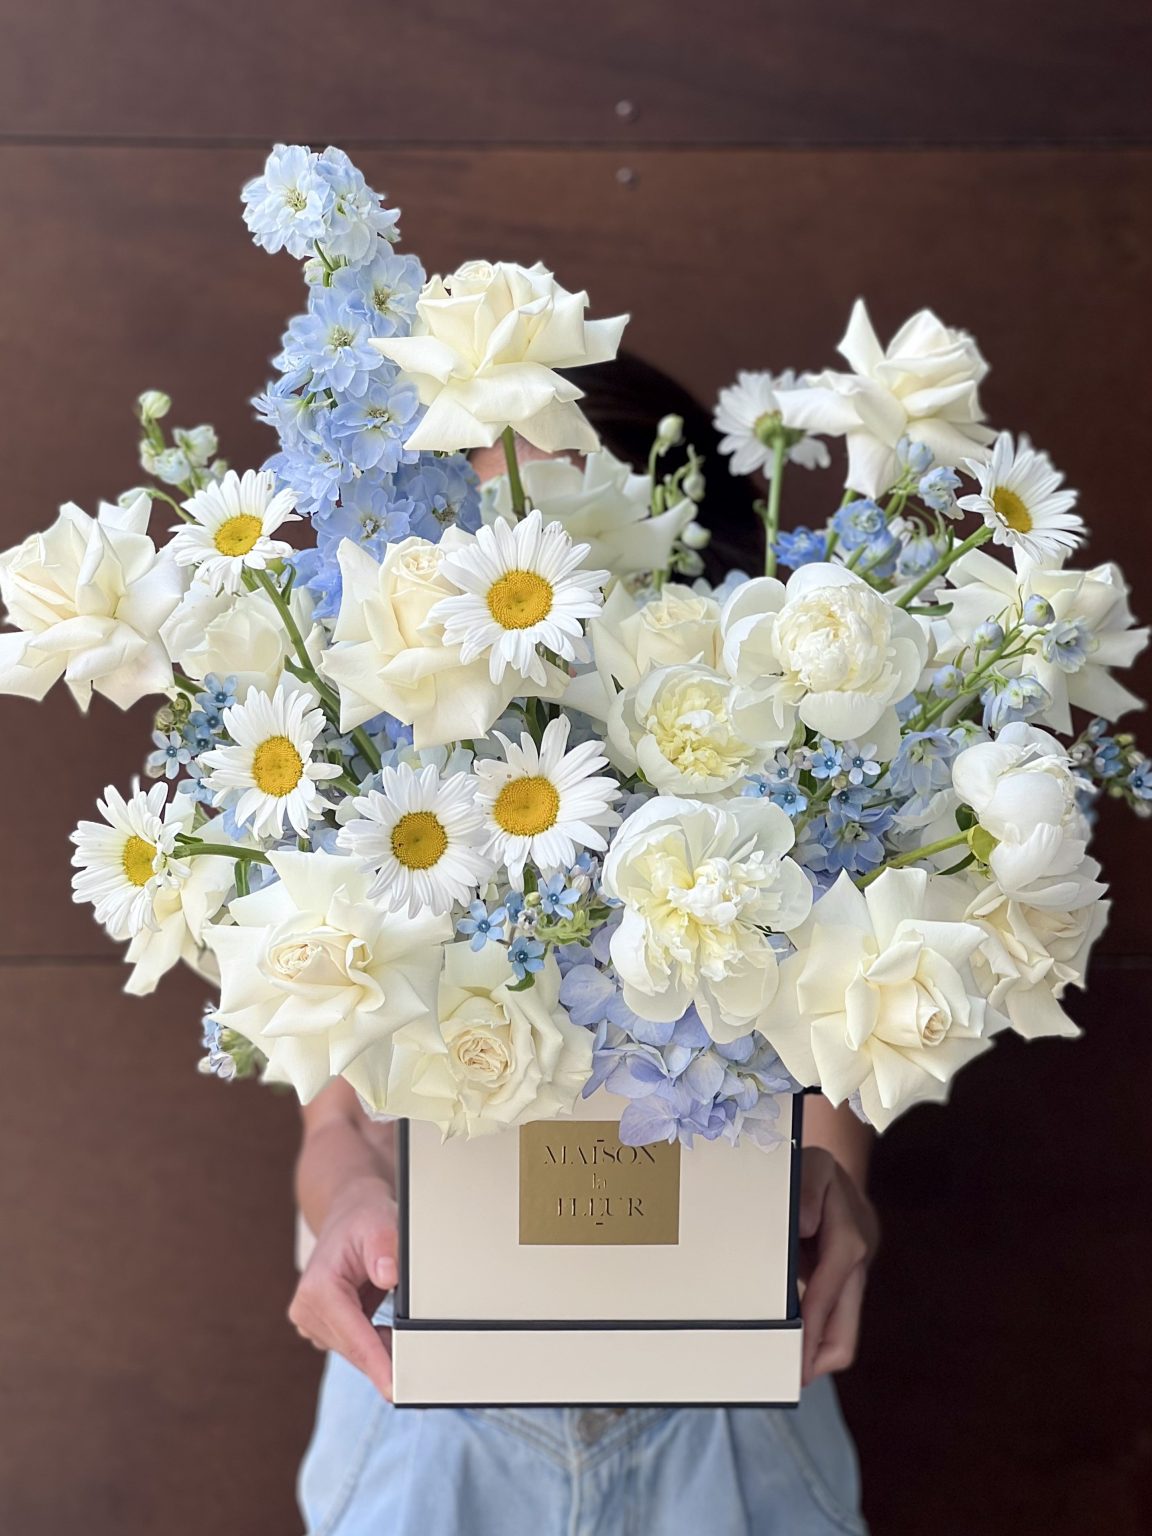 White Roses Bouquet Box, Jardin Bleu - premium roses, peonies, hydrangea, delphinium, daisies, and tweedia flower